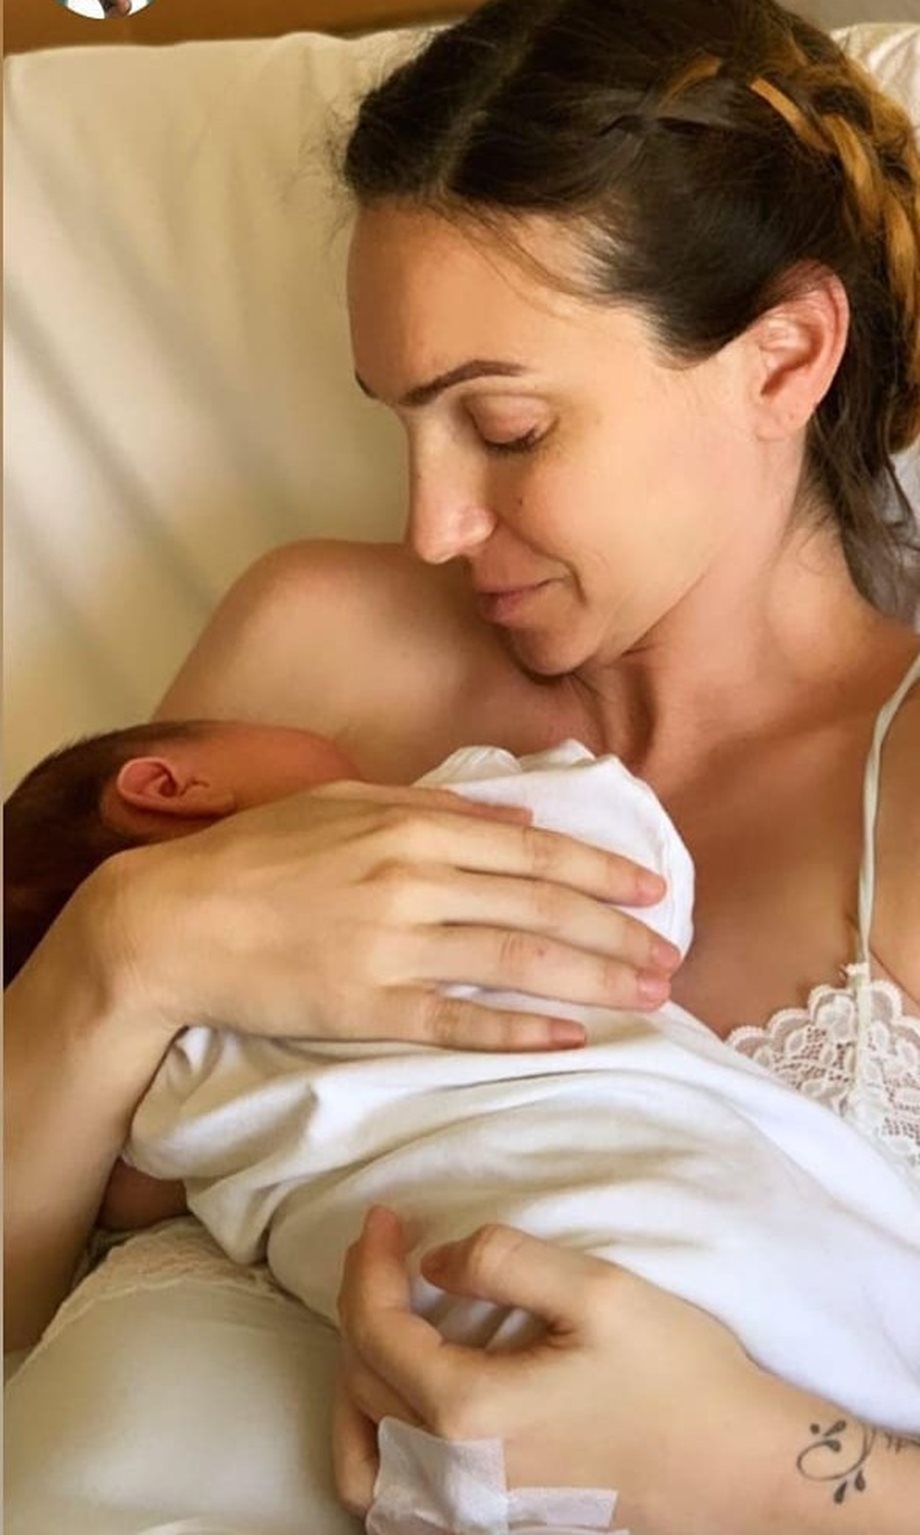 Μορφούλα Ντώνα: Η νέα φωτογραφία με το νεογέννητο γιο της